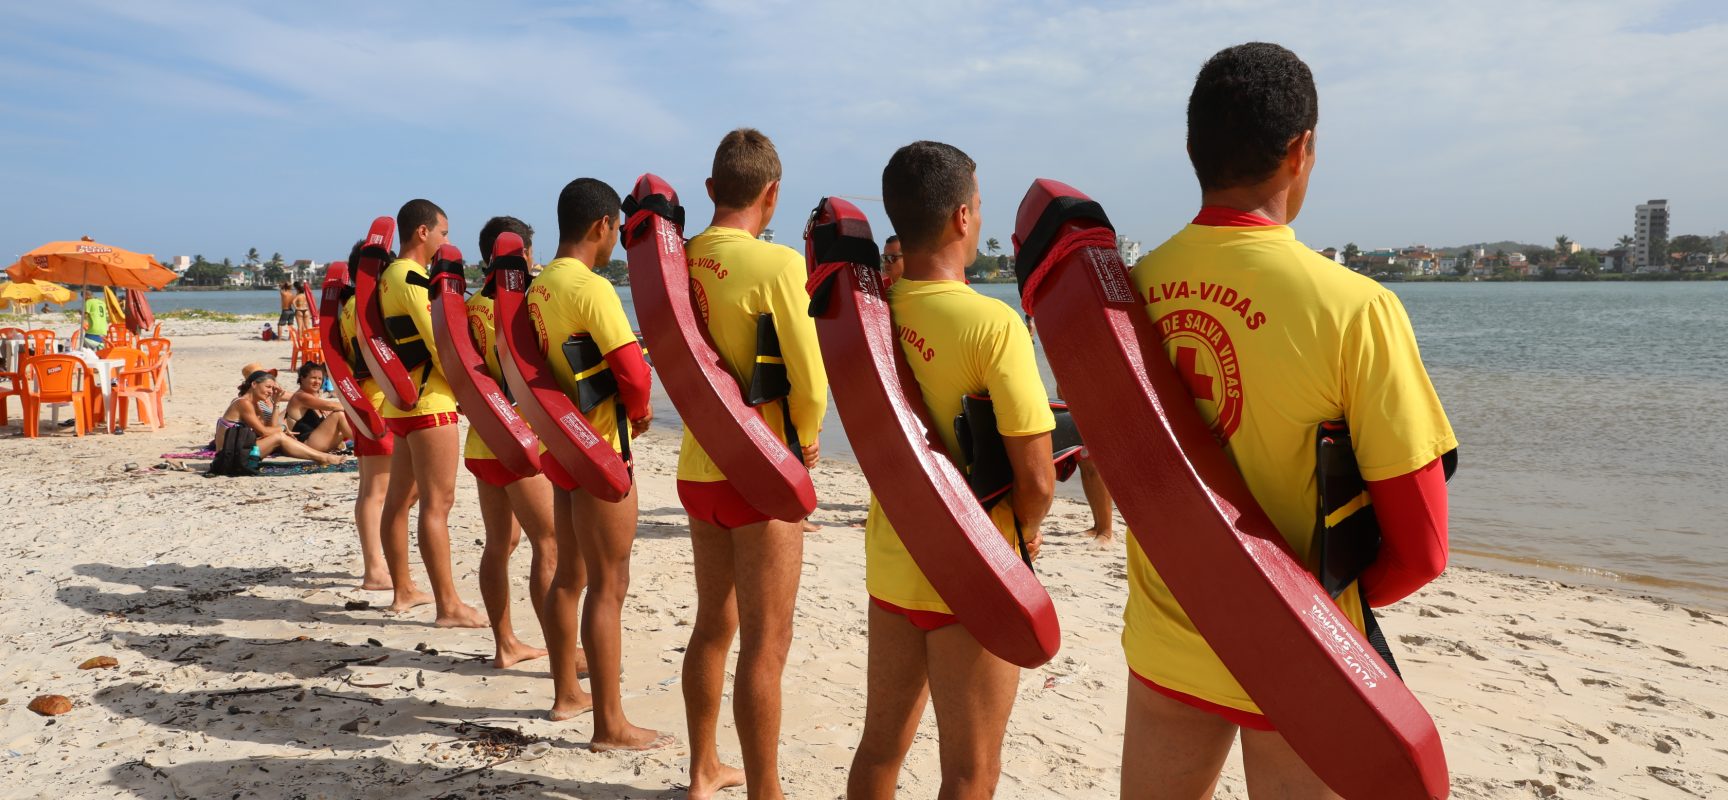 Praias de Ilhéus terão 77 salva-vidas atuando no feriado prolongado de carnaval